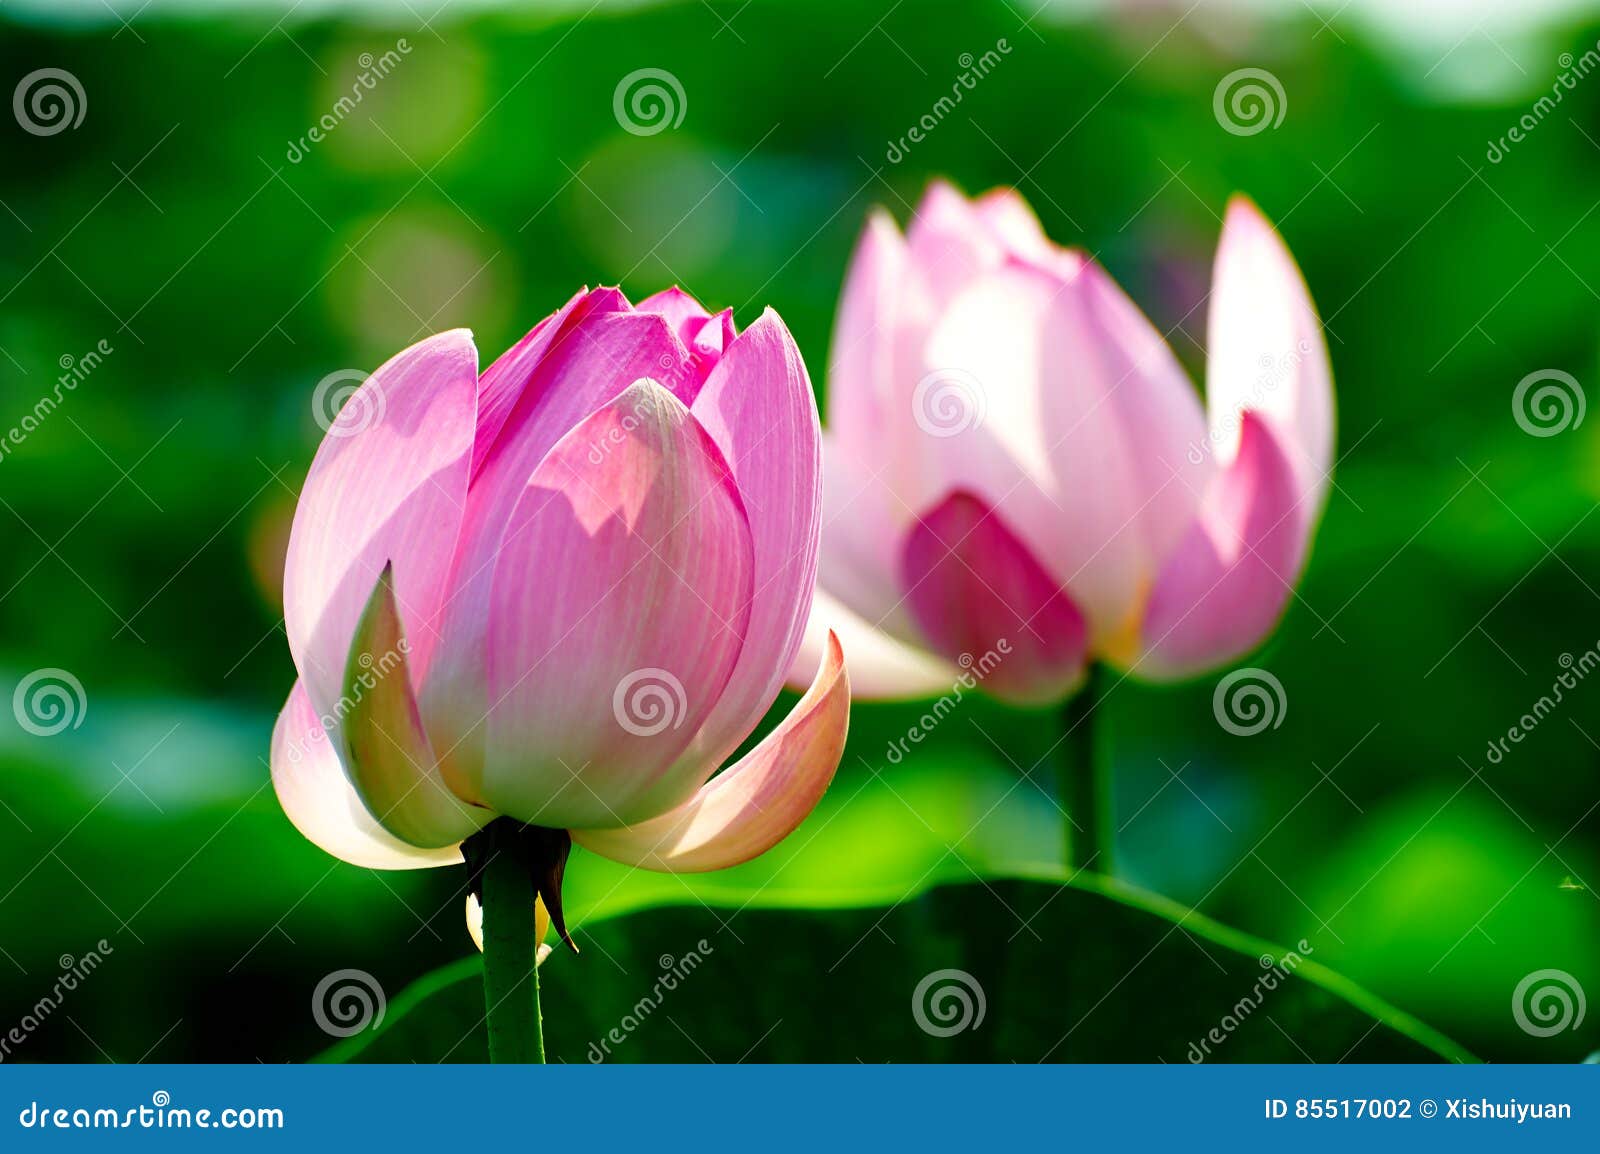 twain pretty lotus flowers